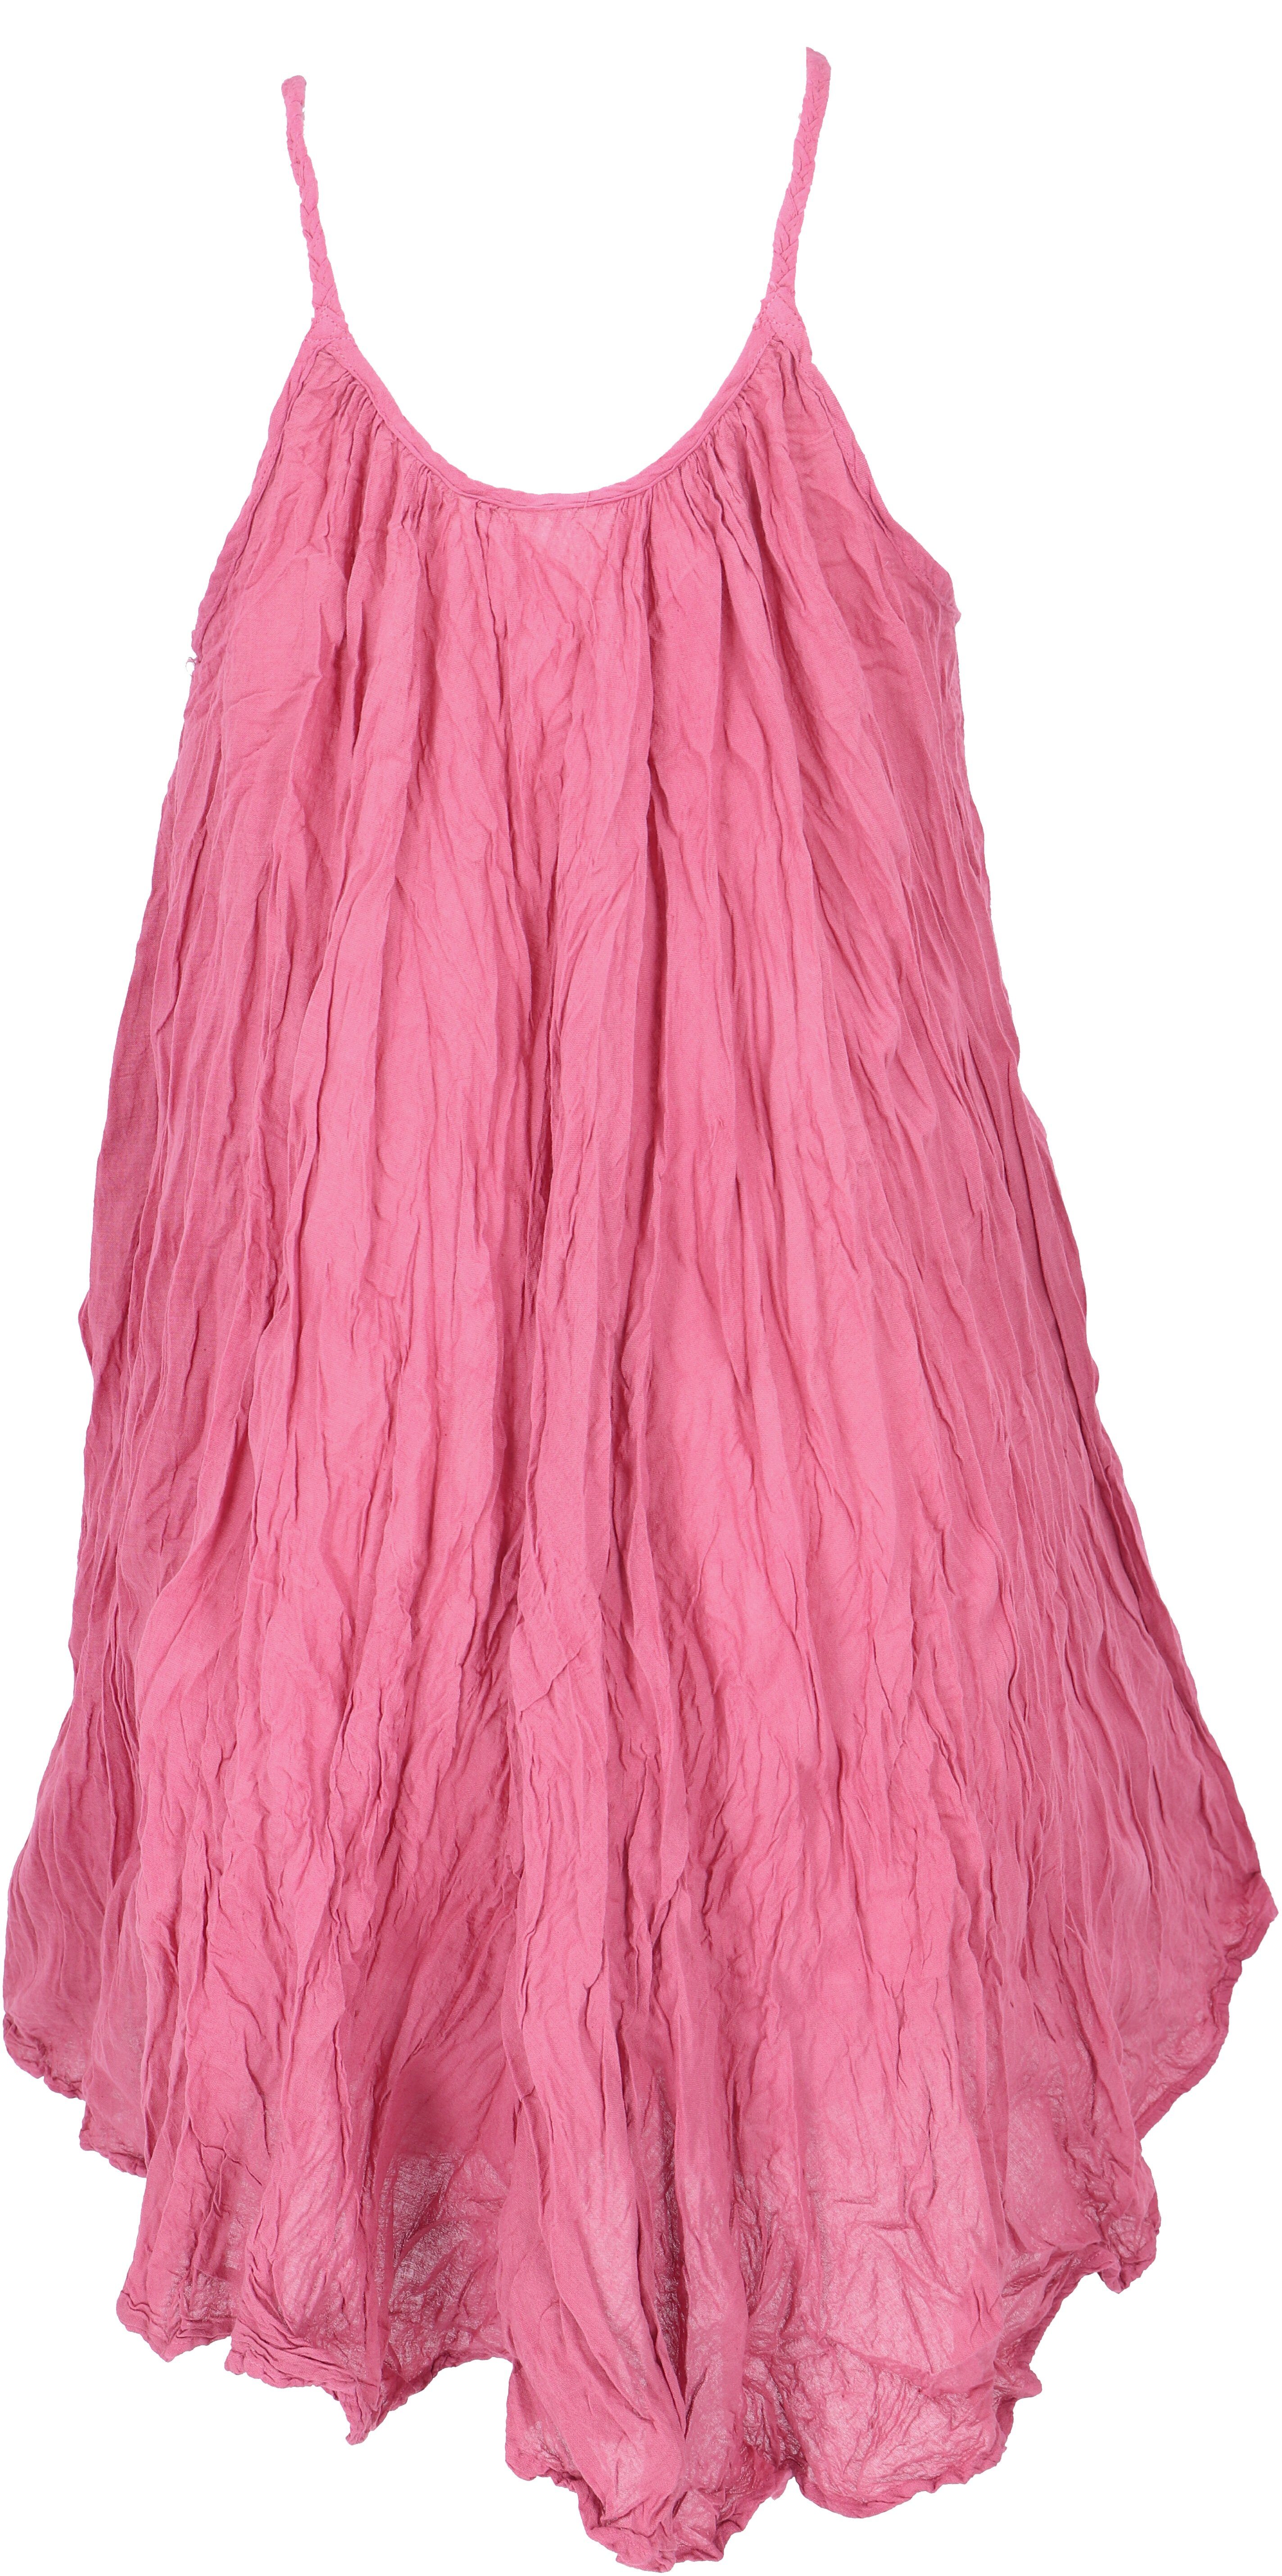 Guru-Shop Midikleid Minikleid, Boho Bekleidung Krinkelkleid, Sommerkleid,.. alternative pink